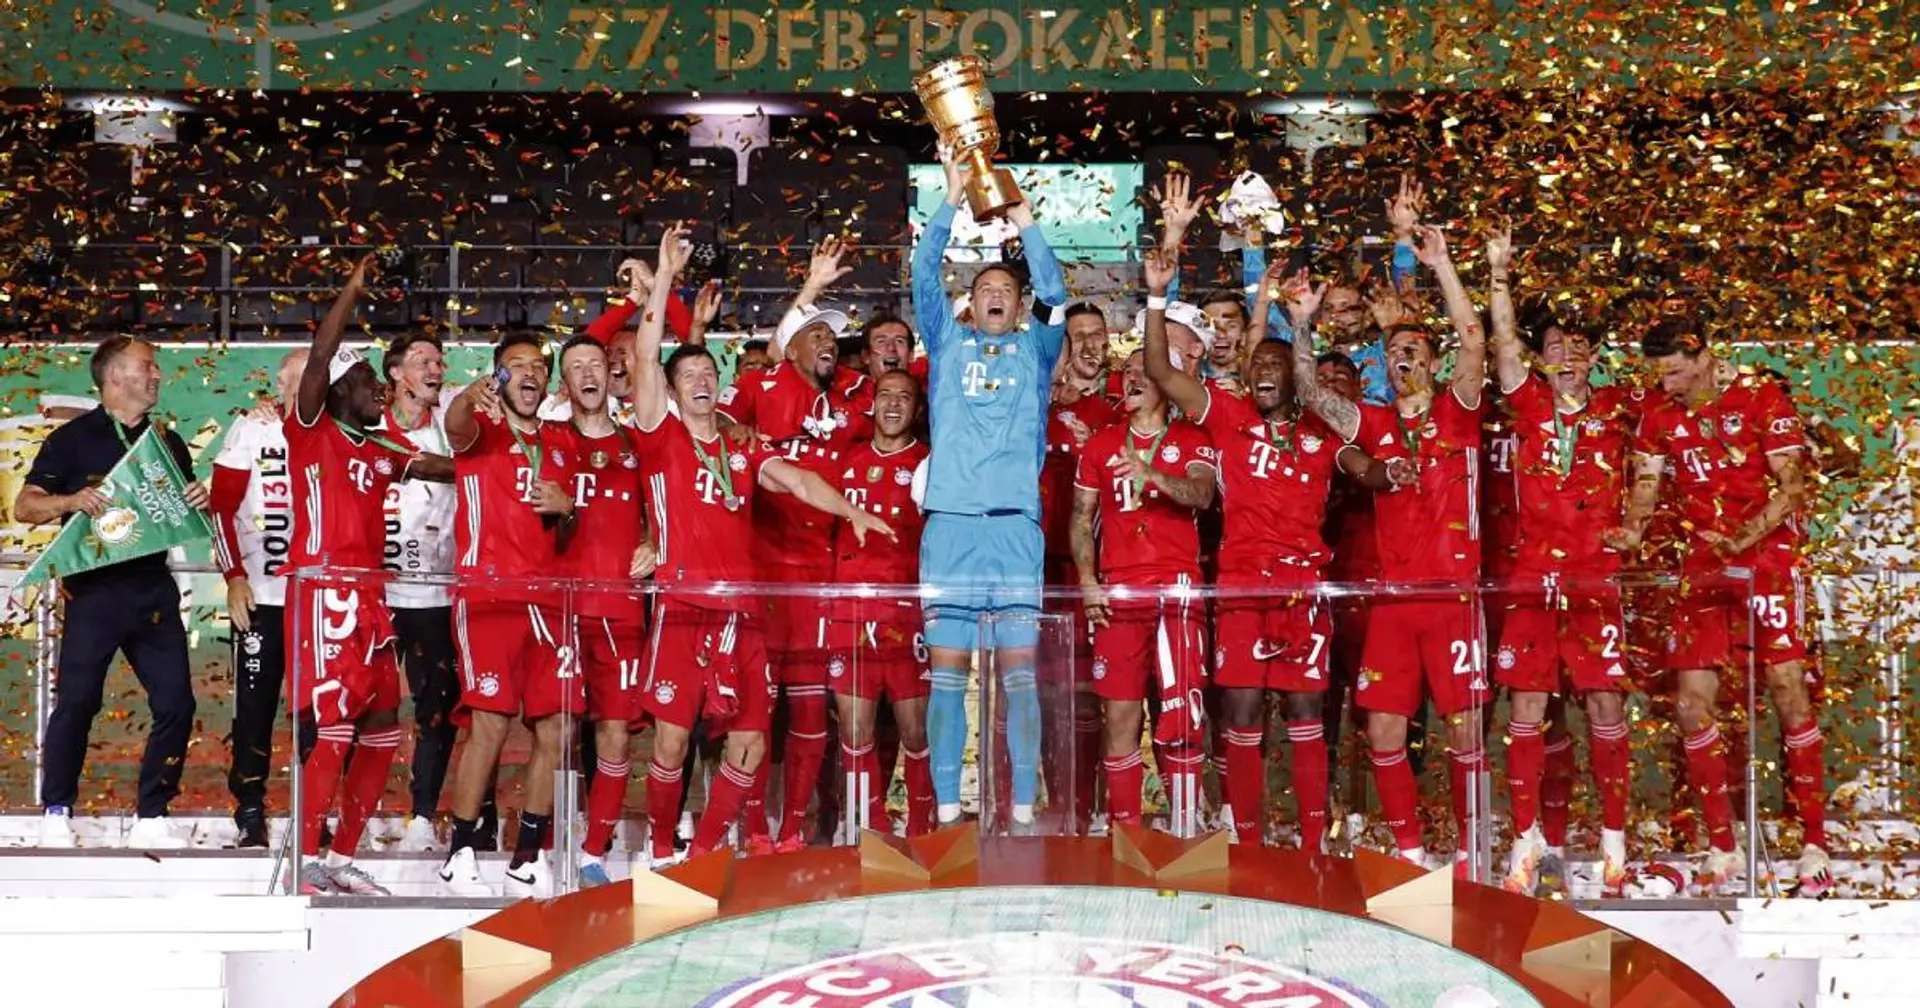 "Welcher Gegner soll uns besiegen?": So reagieren Bayern-Fans auf den Double-Triumph